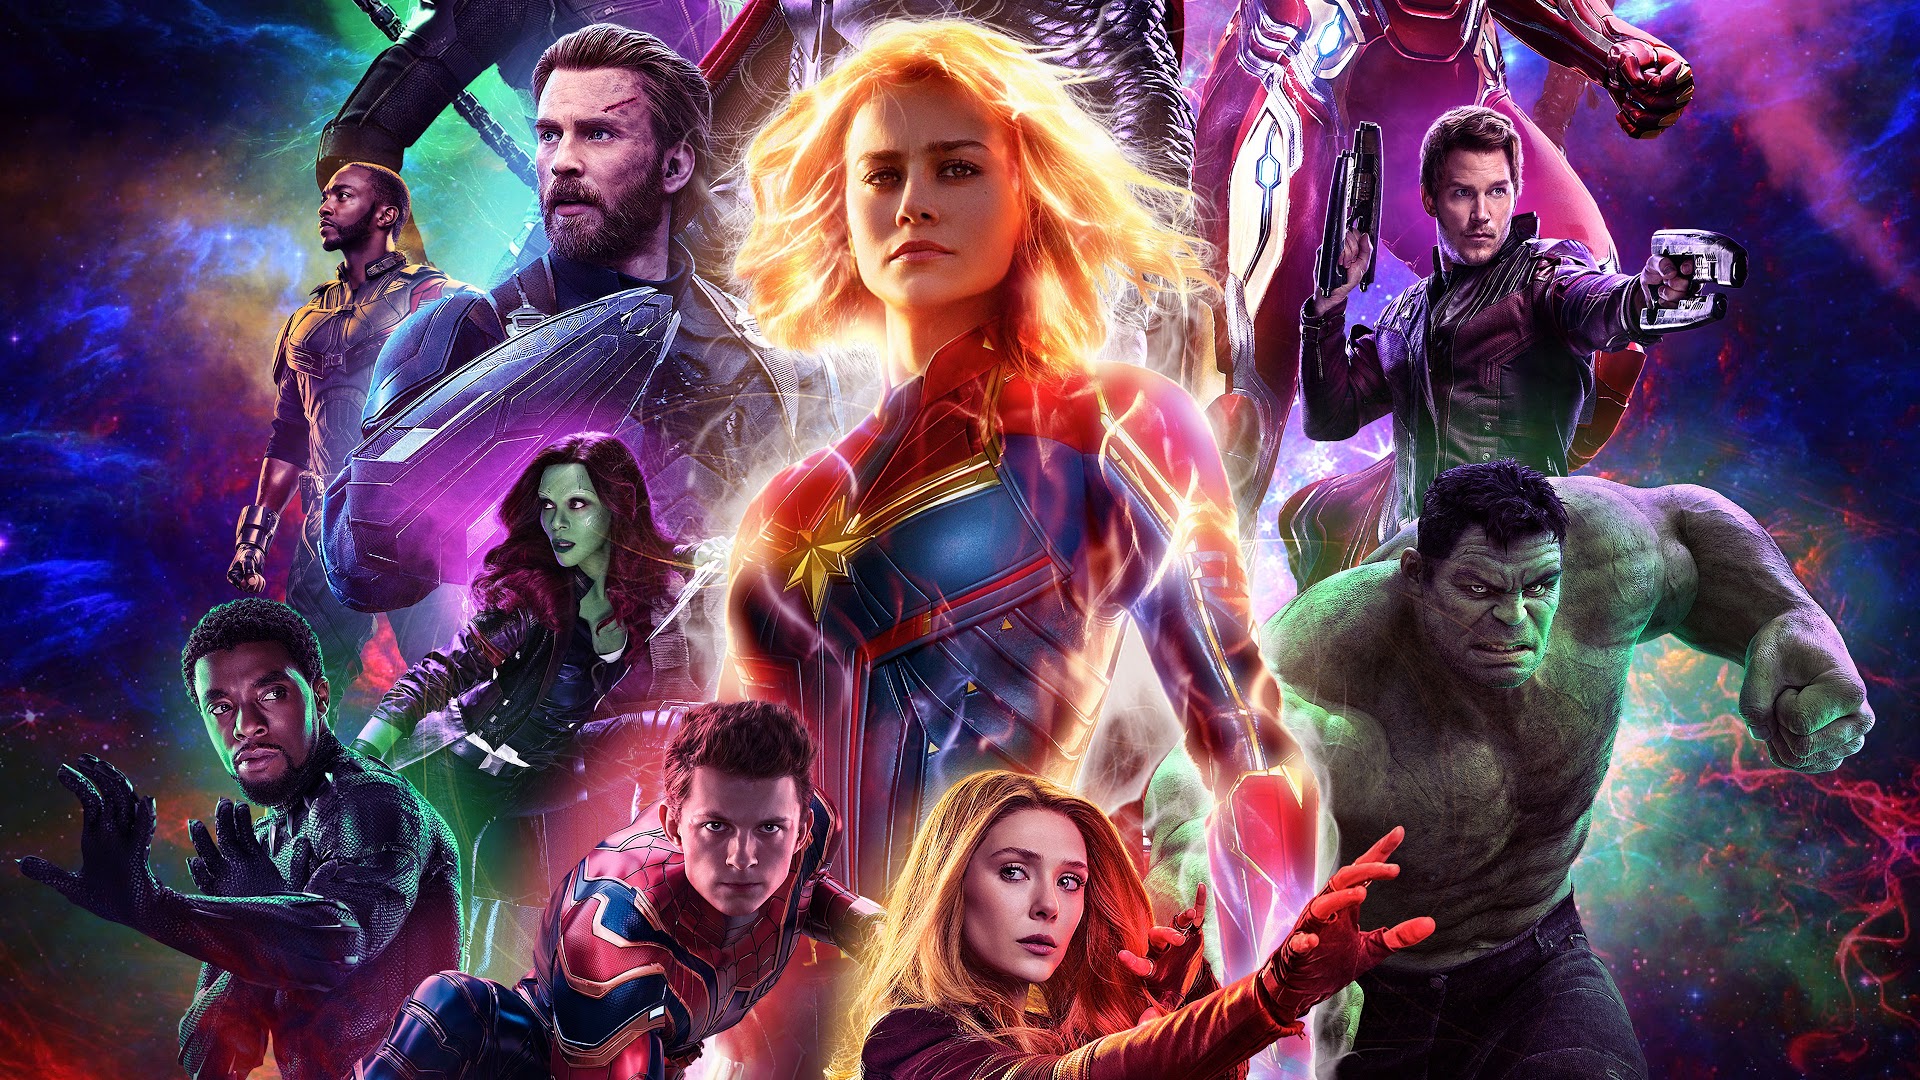 Endgame, Characters, 4k, - Avengers Endgame 2019 Poster - HD Wallpaper 